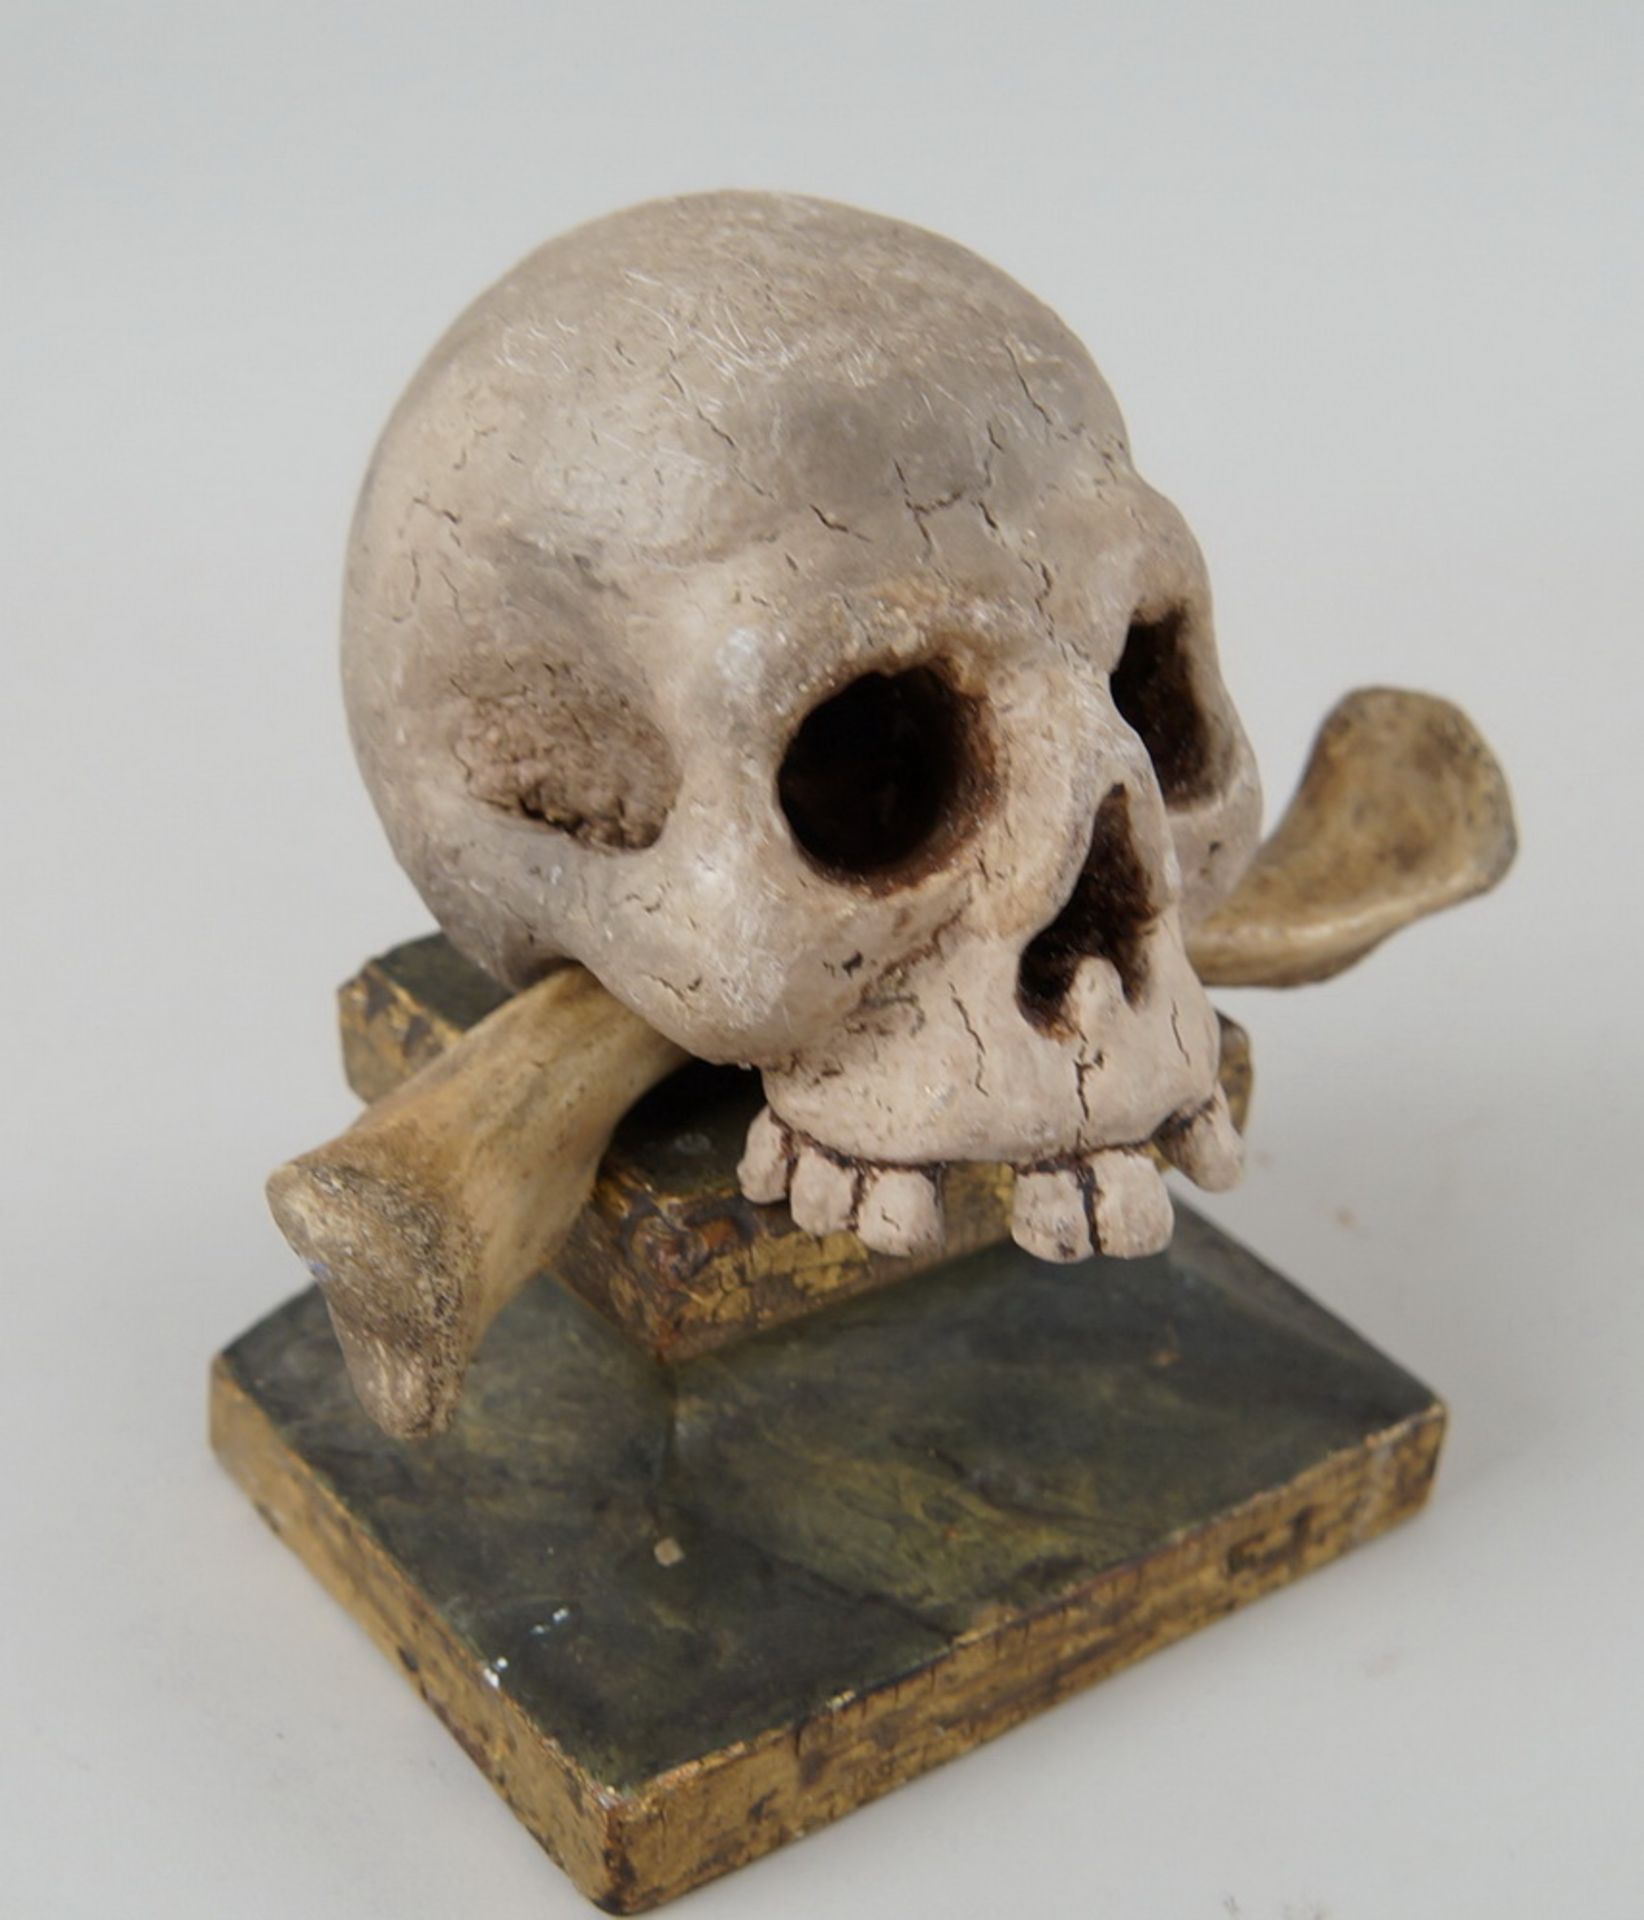 Reliquien - Totenkopf auf Sockel, Holz geschnitzt und gefasst, it echtem Knochen,14x13x9cm - Bild 4 aus 7